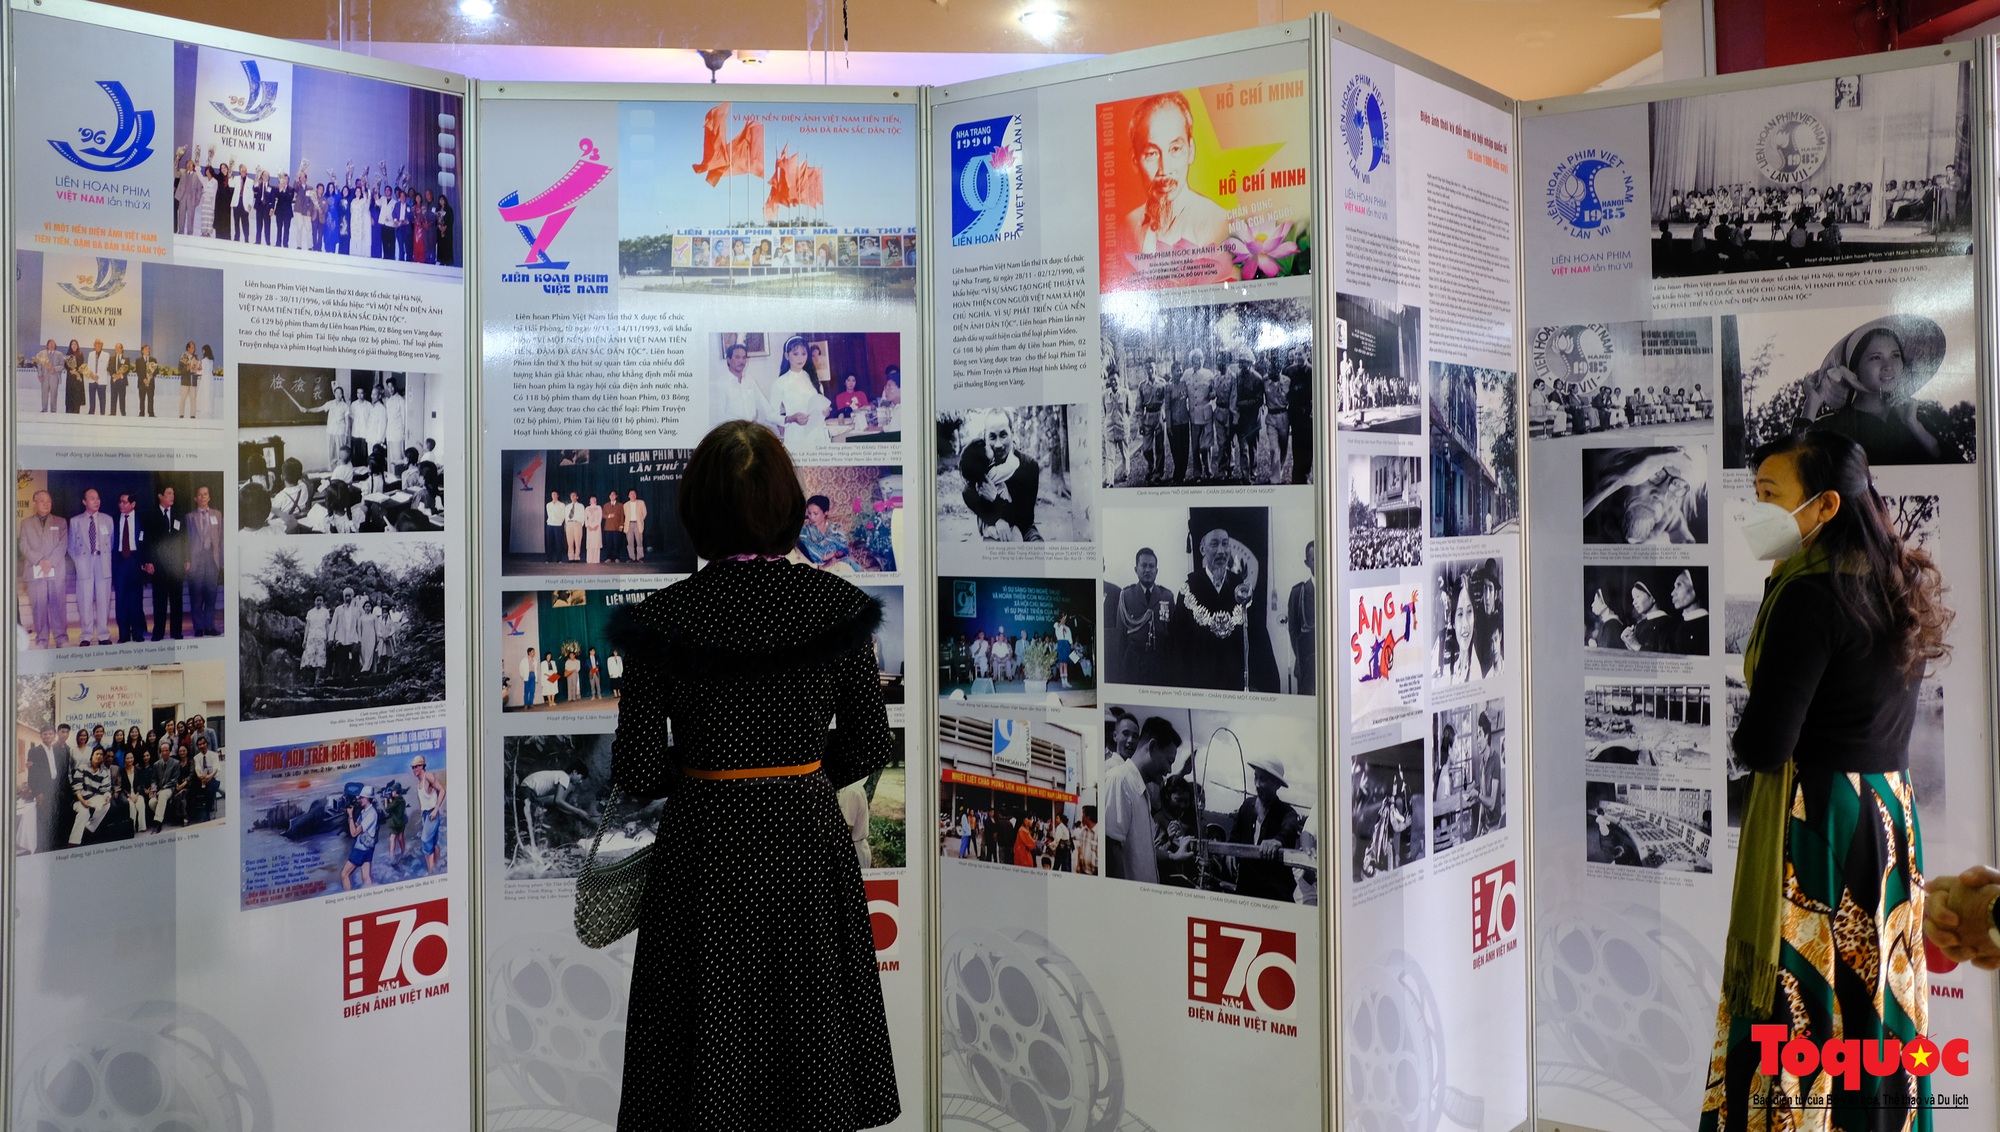 Hơn 200 tư liệu, hiện vật quý được trưng bày kỷ niệm 70 năm Điện ảnh Cách mạng Việt Nam - Ảnh 3.